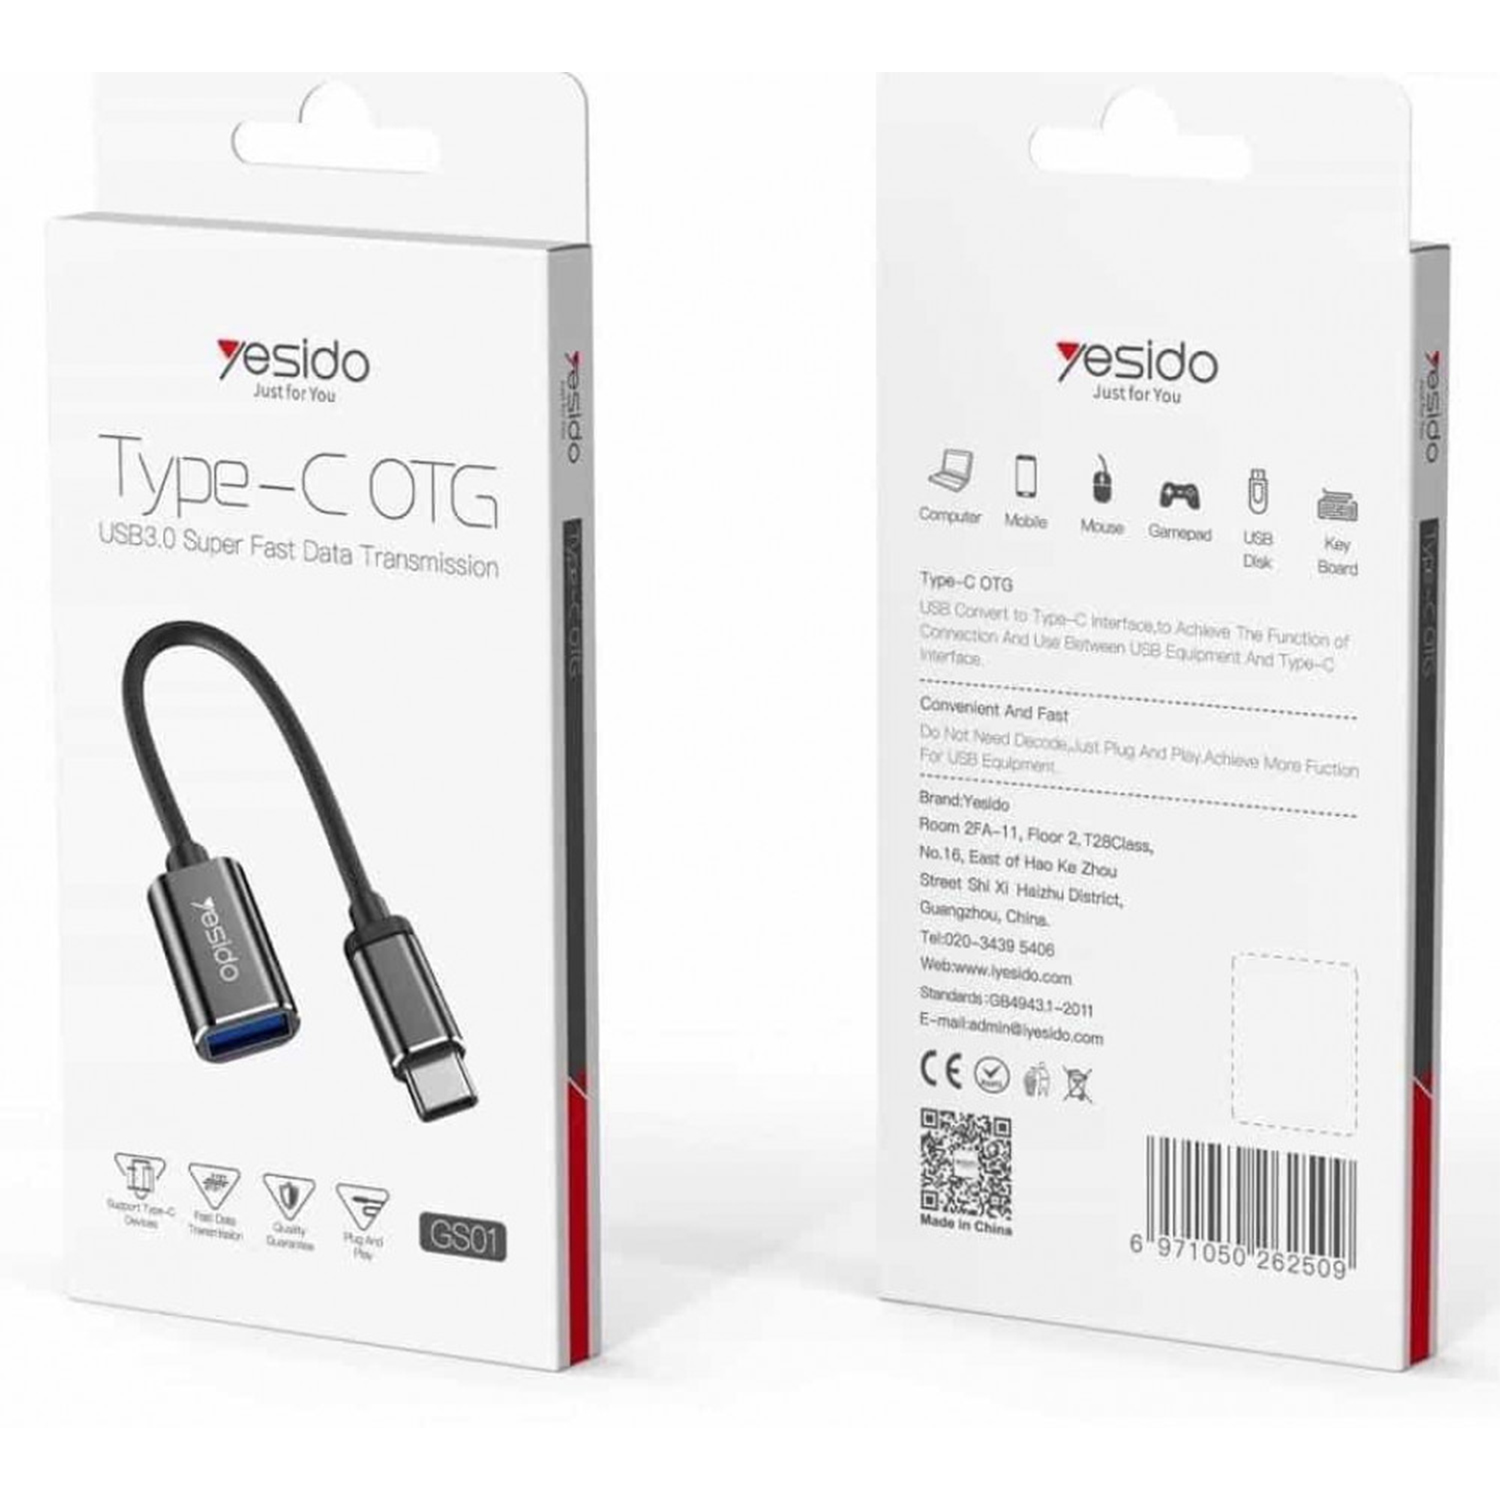 مبدل OTG USB-C به USB3.0 یسیدو مدل GS01